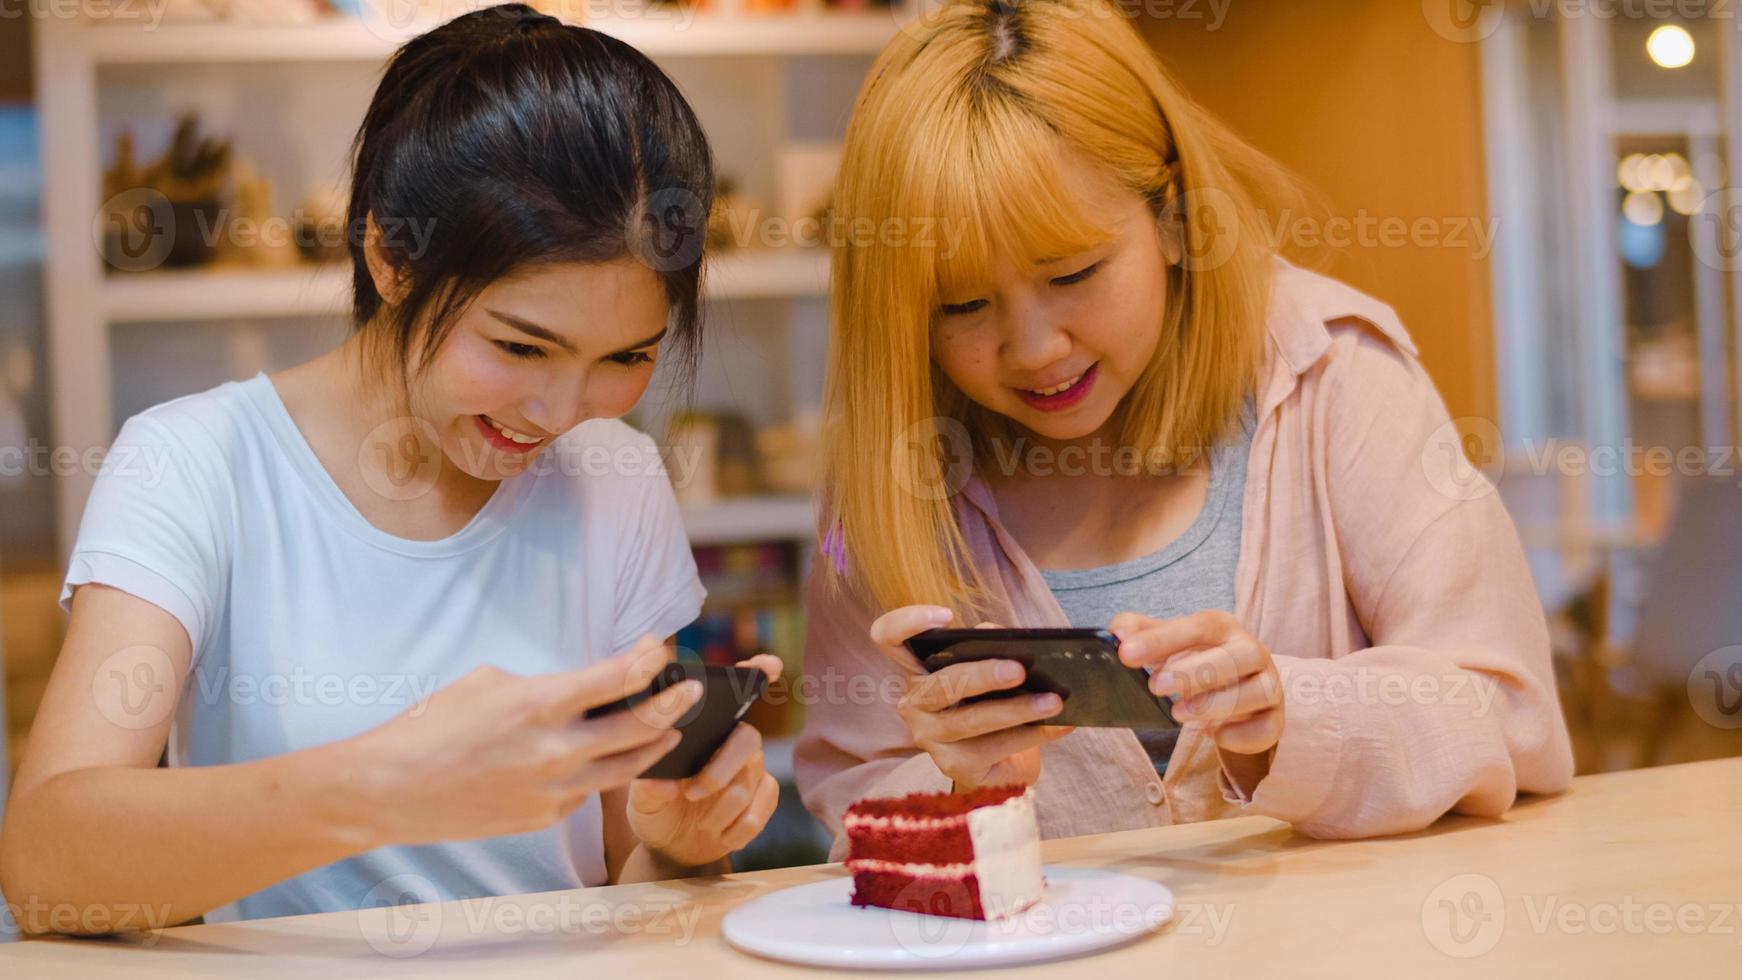 glad ung asien vän använder telefonen ta ett fotografi mat och tårta på kaféet. två glada attraktiva asiatiska damer tillsammans på restaurang eller café. semesteraktivitet eller modern livsstilskoncept. foto